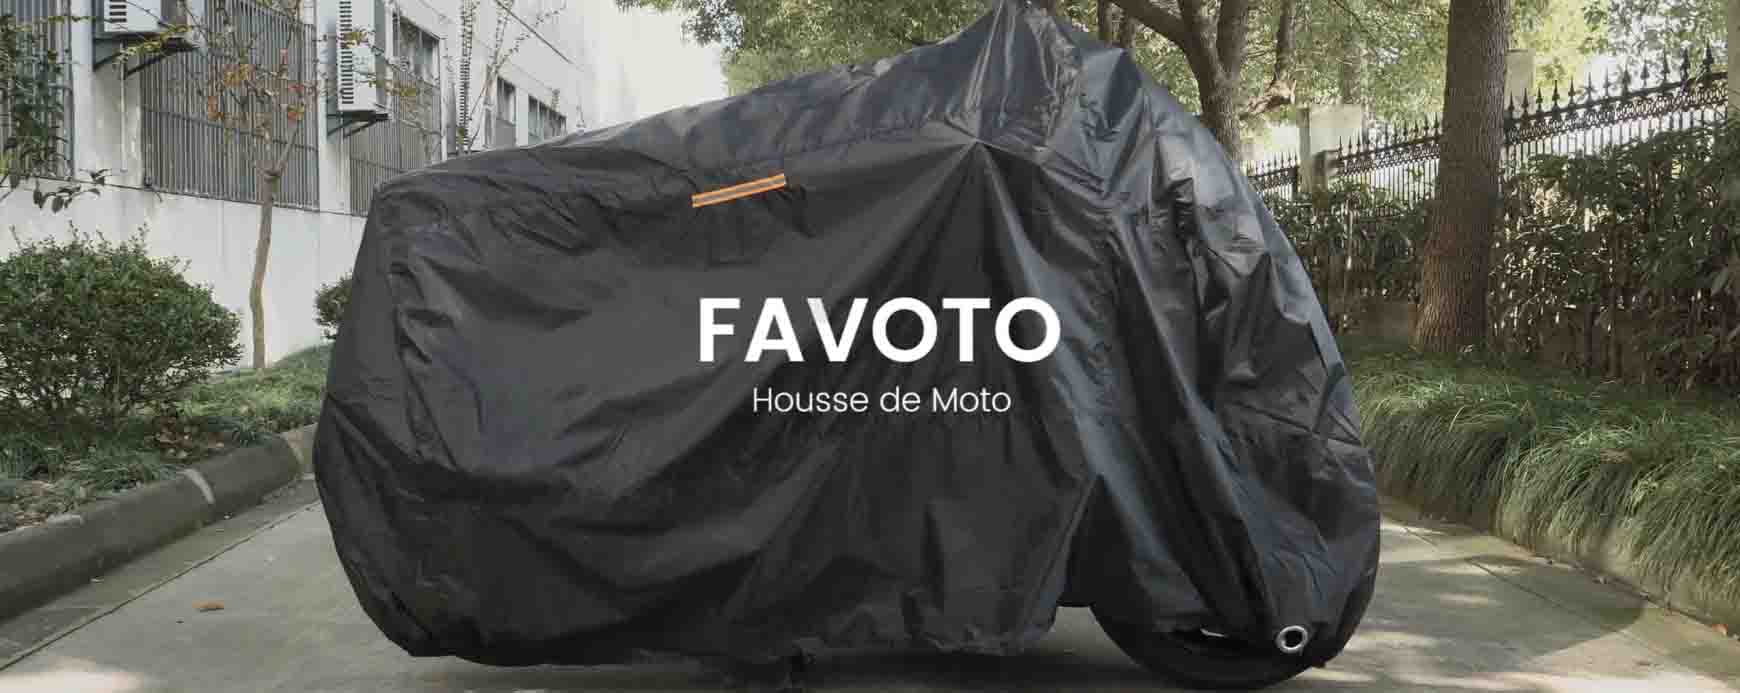 LA MEILLEURE HOUSSE DE PROTECTION MOTO & SCOOTER - Favoto 